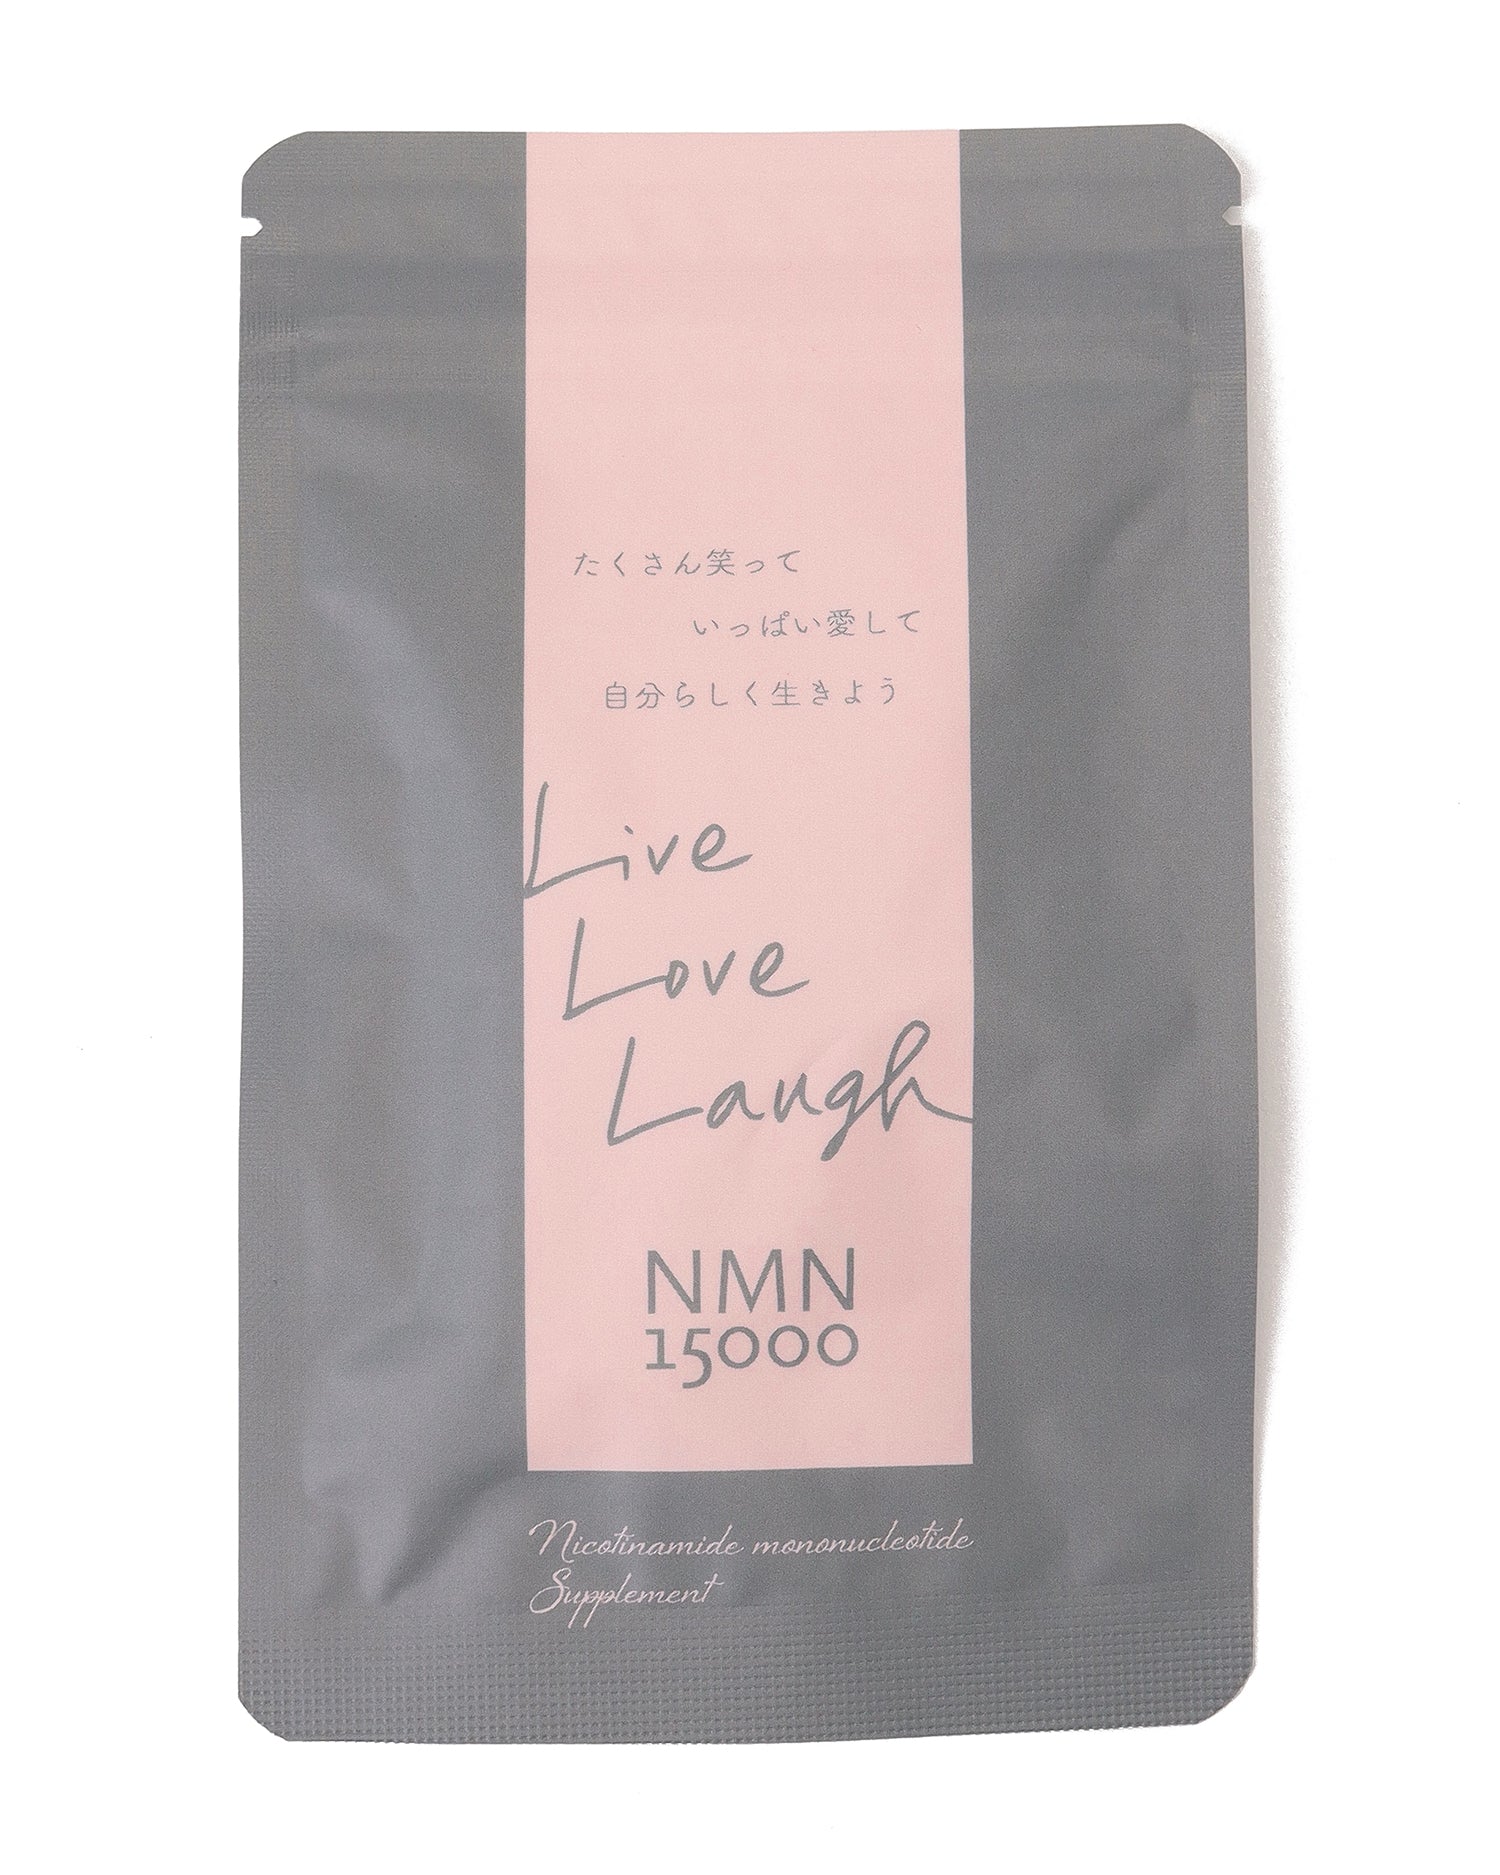 6日間お試しサイズ】Live Love Laugh NMN 15000 – AMARC LIFE STORE